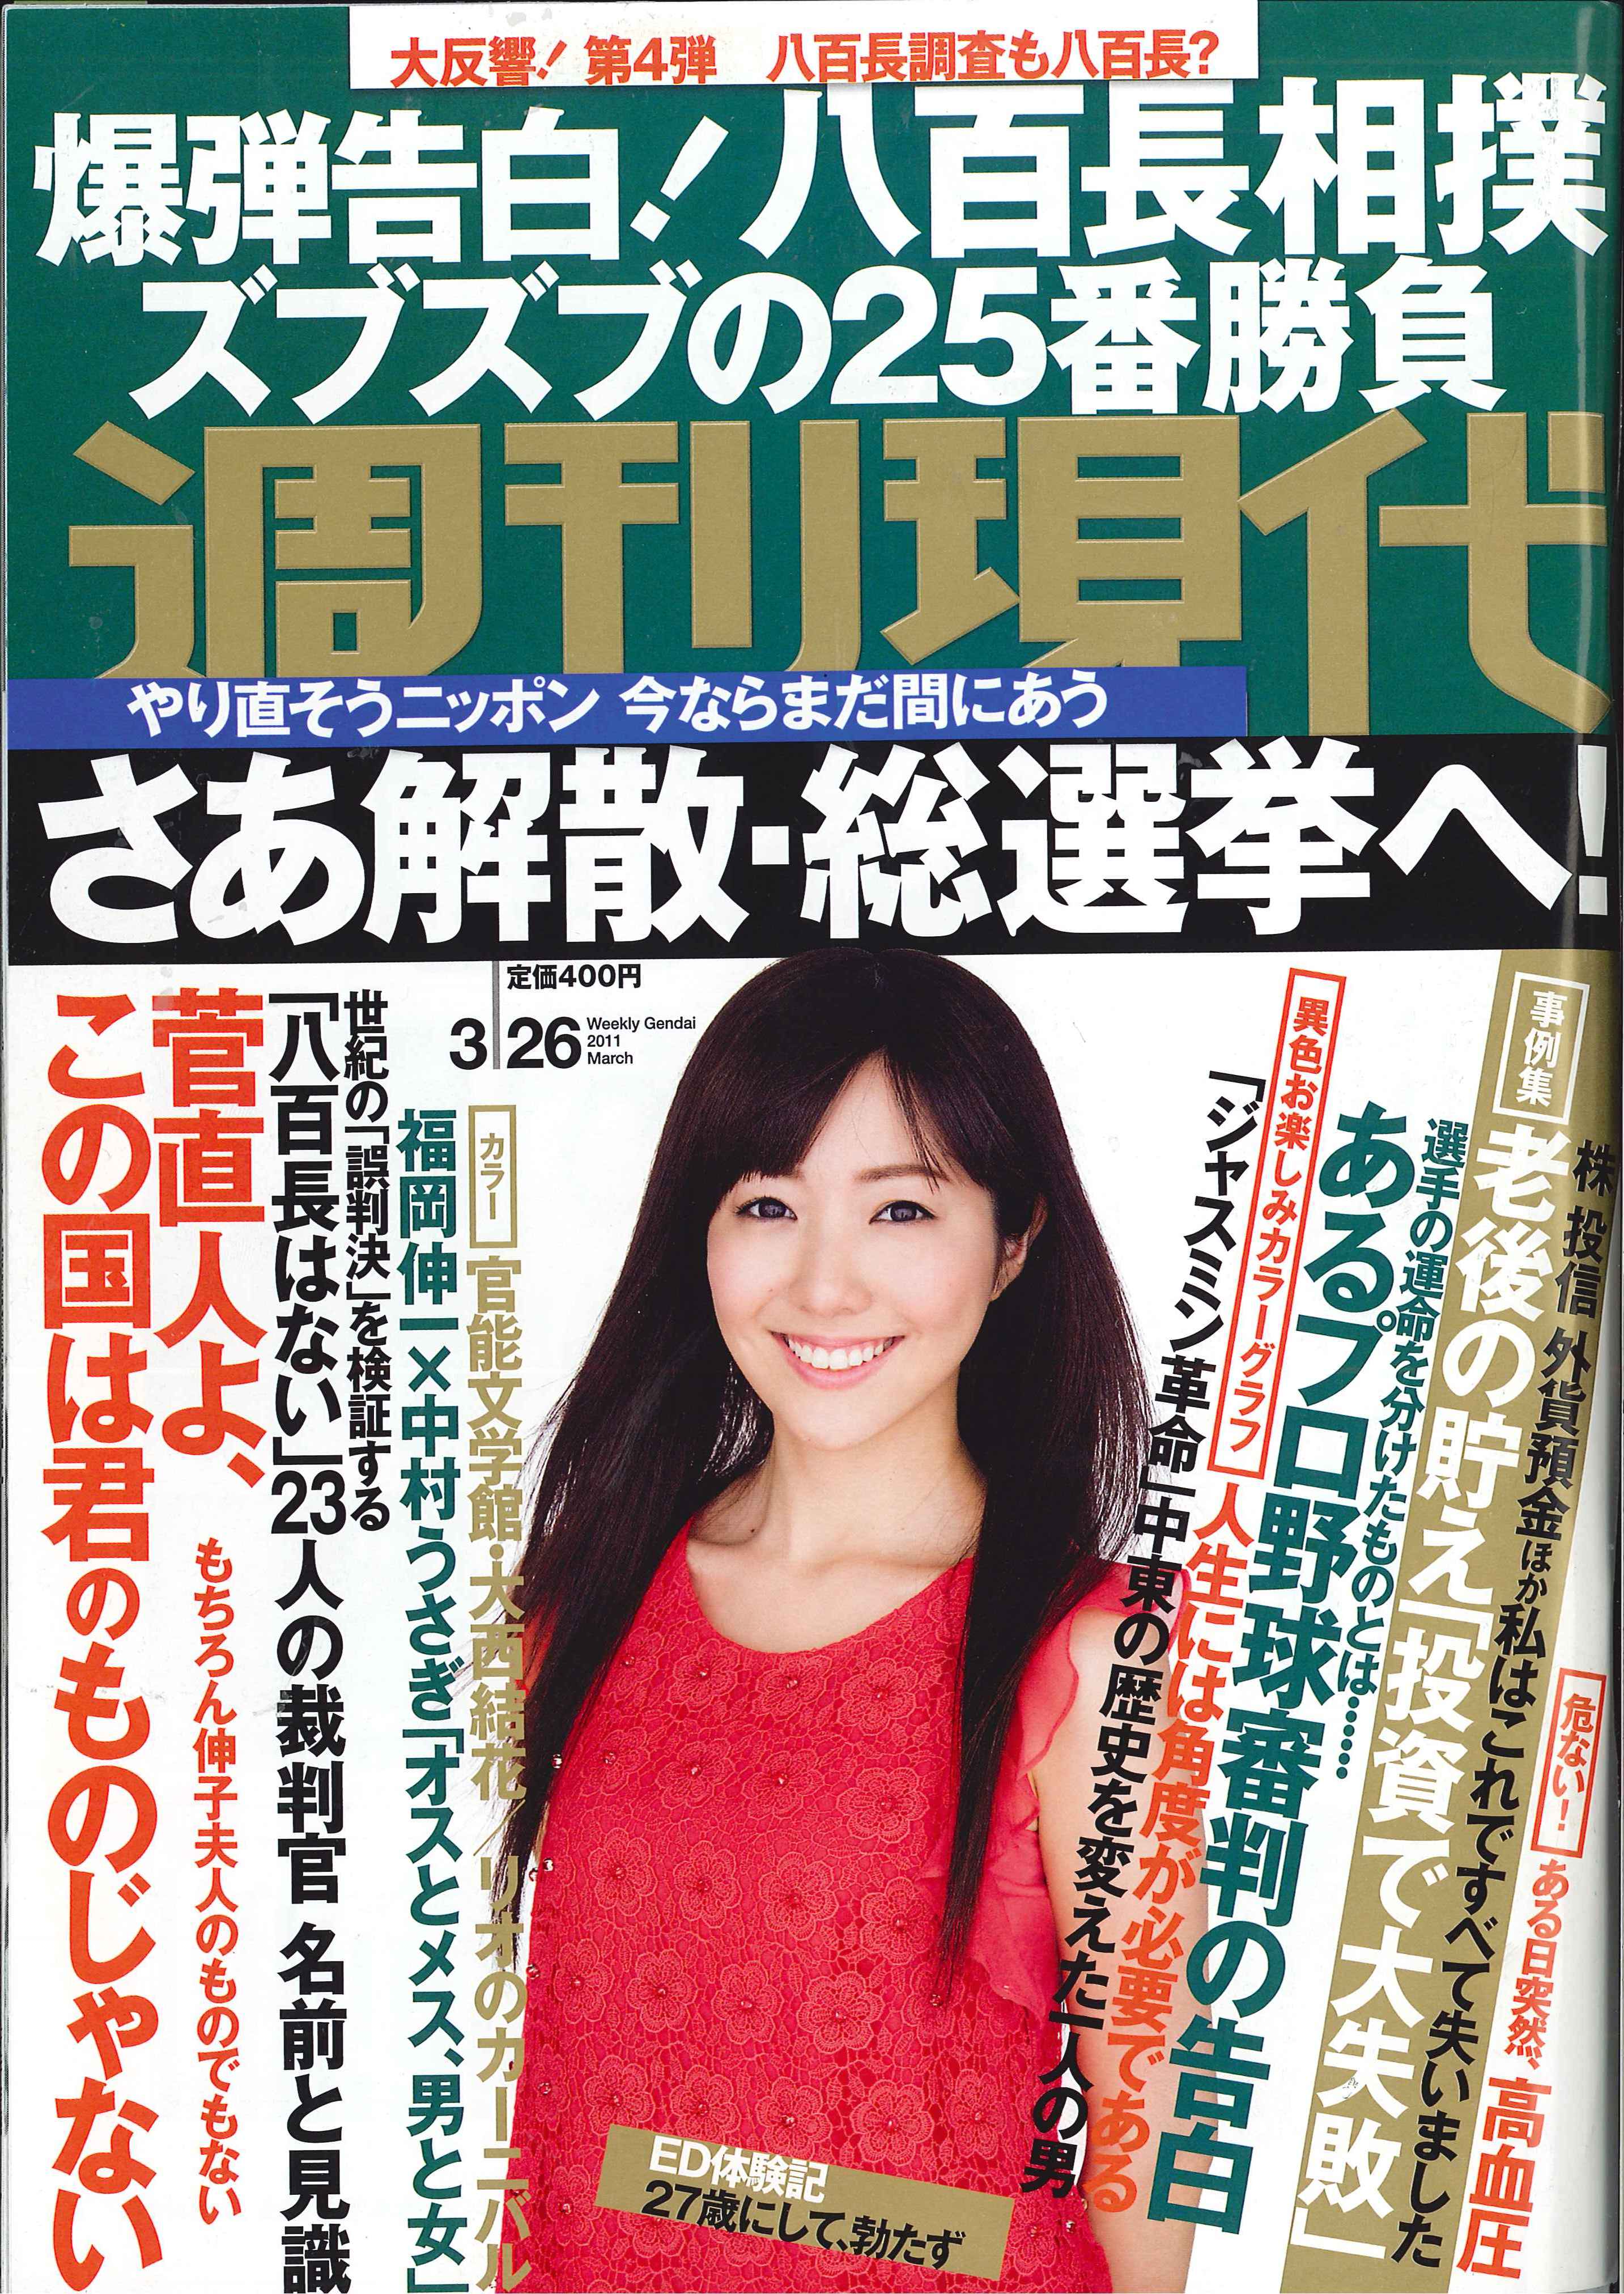 2011-3-14 週刊現代-1.jpg